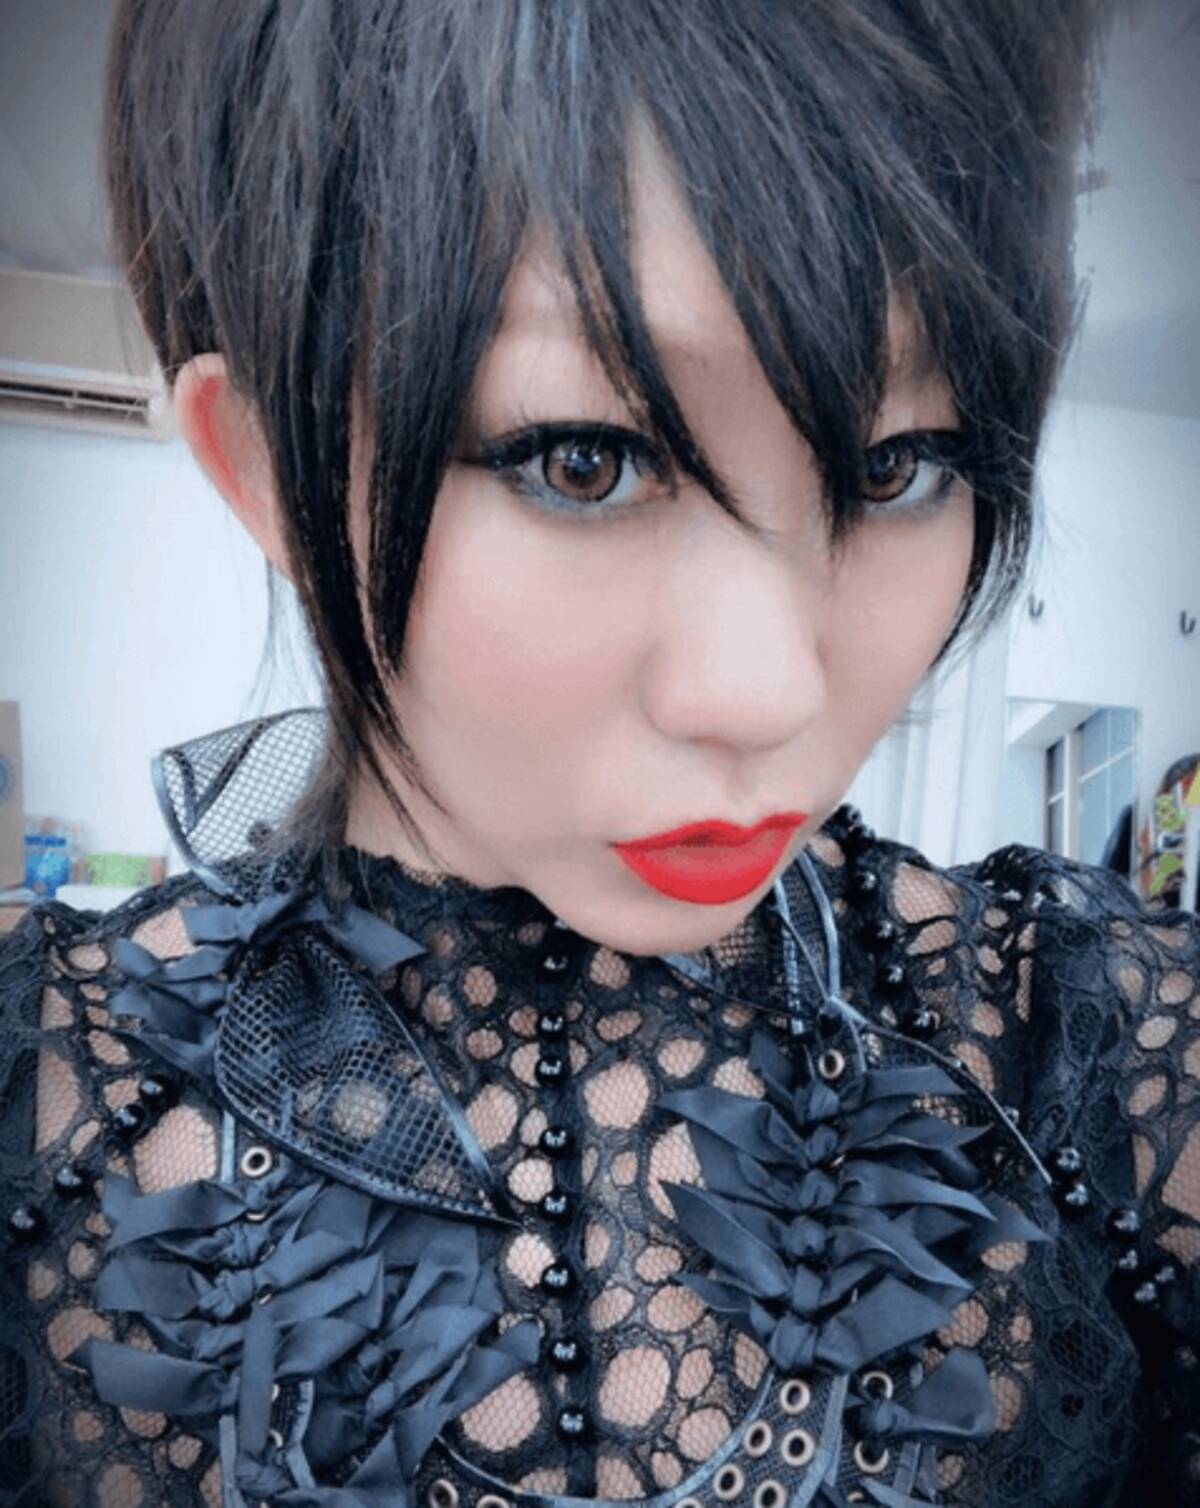 倖田來未の黒髪ショート写真に反響 強め來未さん 2018年7月10日